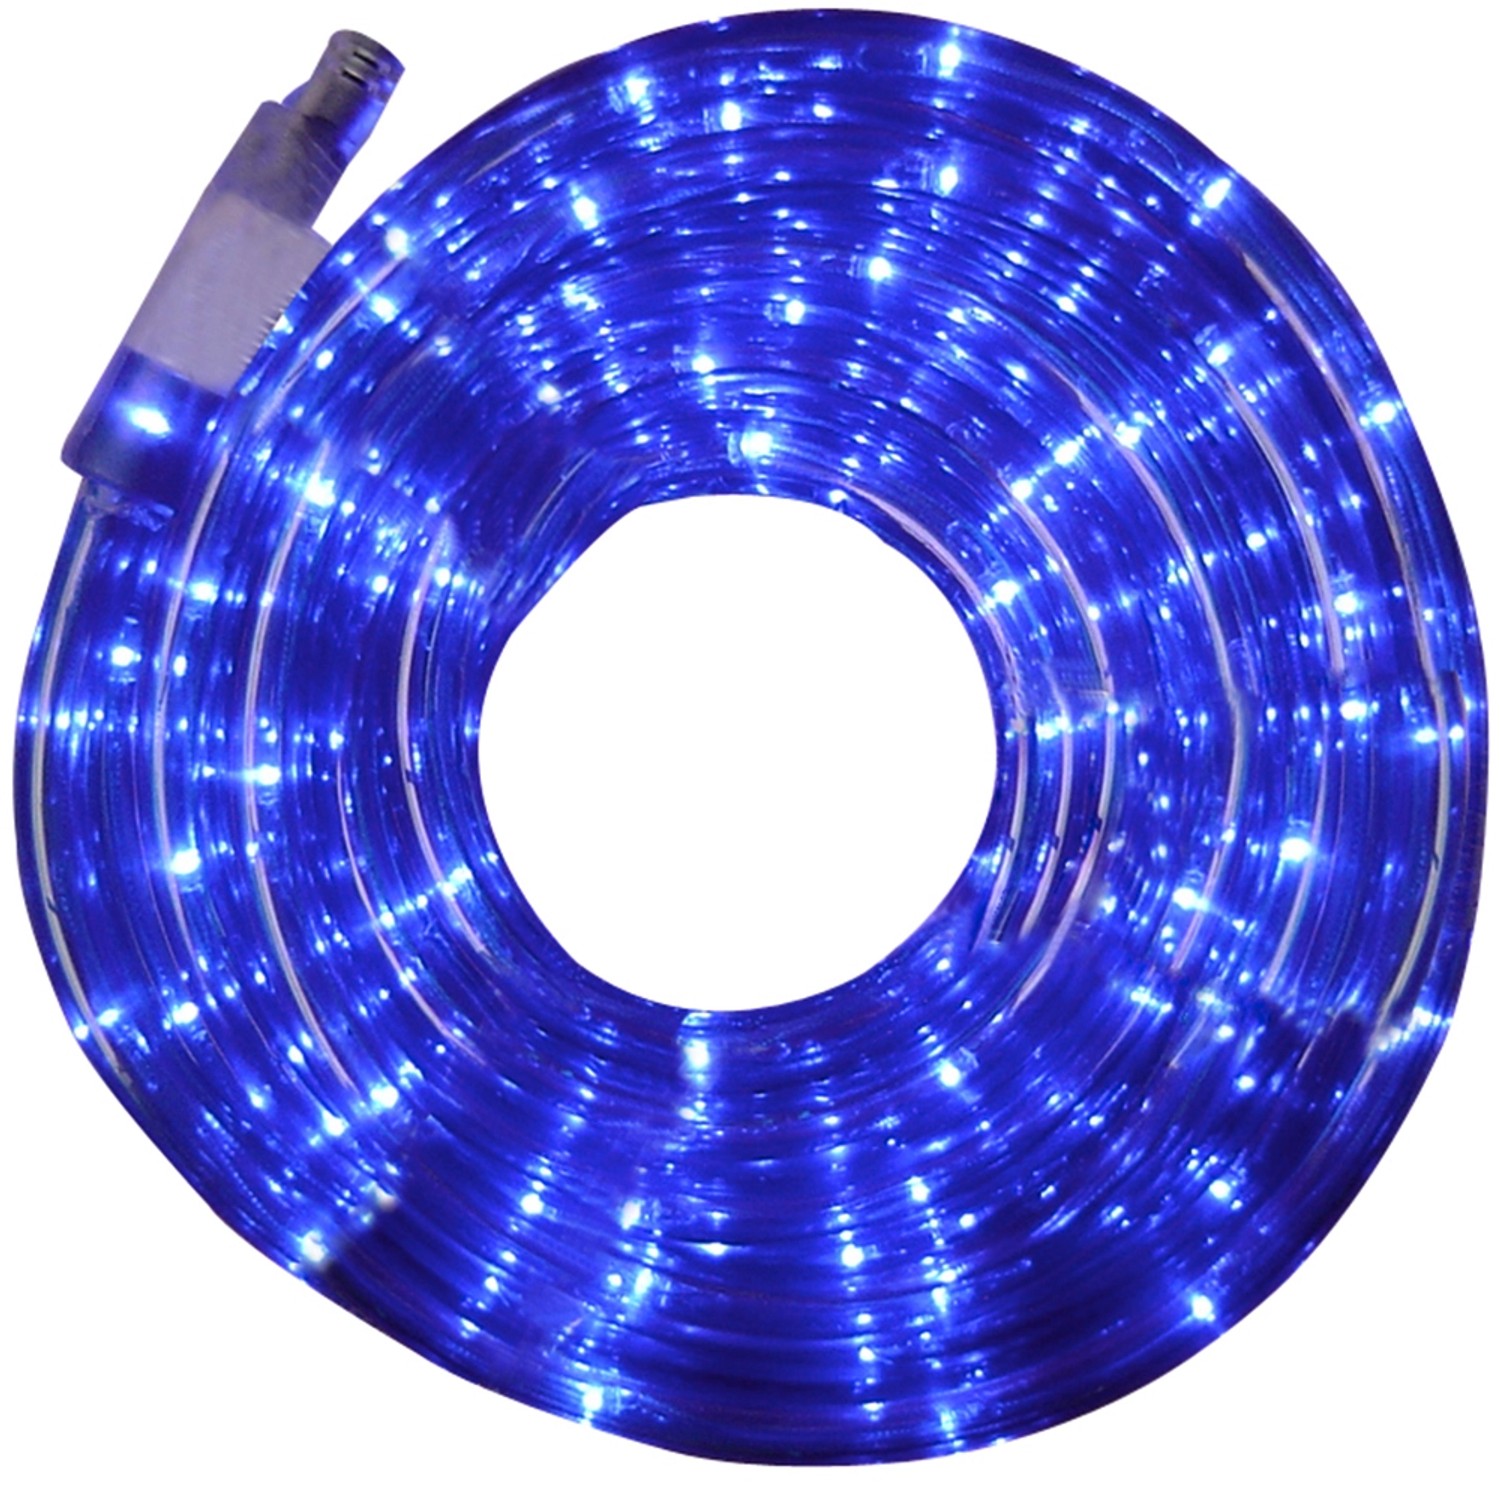 LeuchtenDirekt by Neuhaus LED-Lichtschlauch 6 m Blau